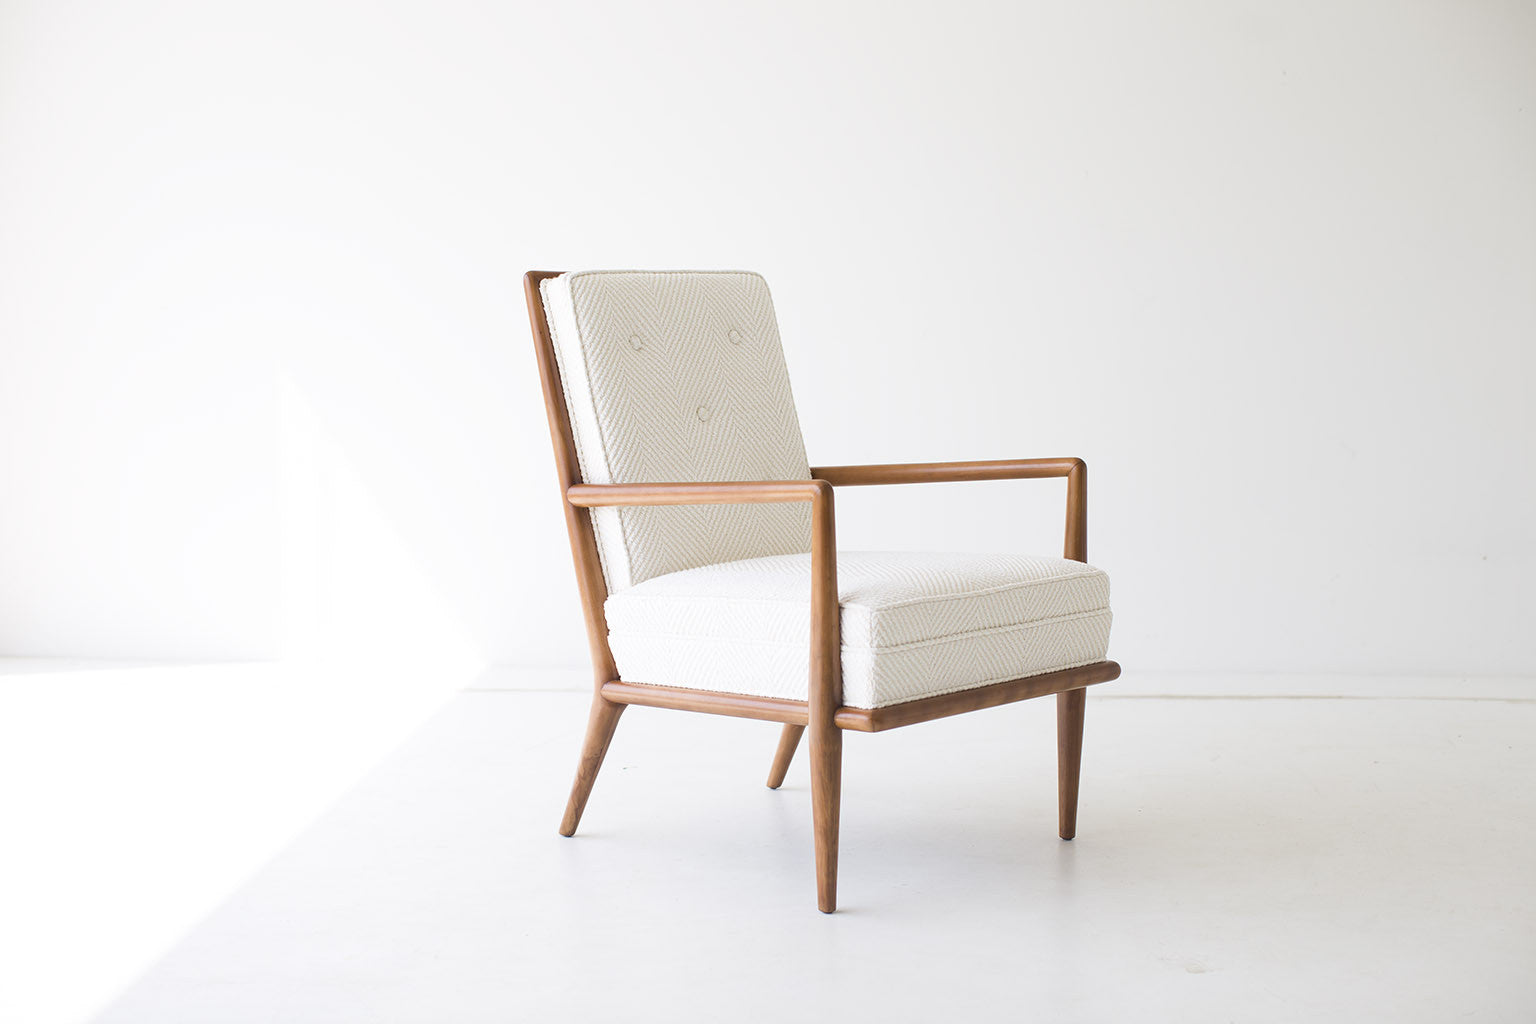 TH Robsjohn-Gibbings Lounge Chair for Widdicomb - 01151602